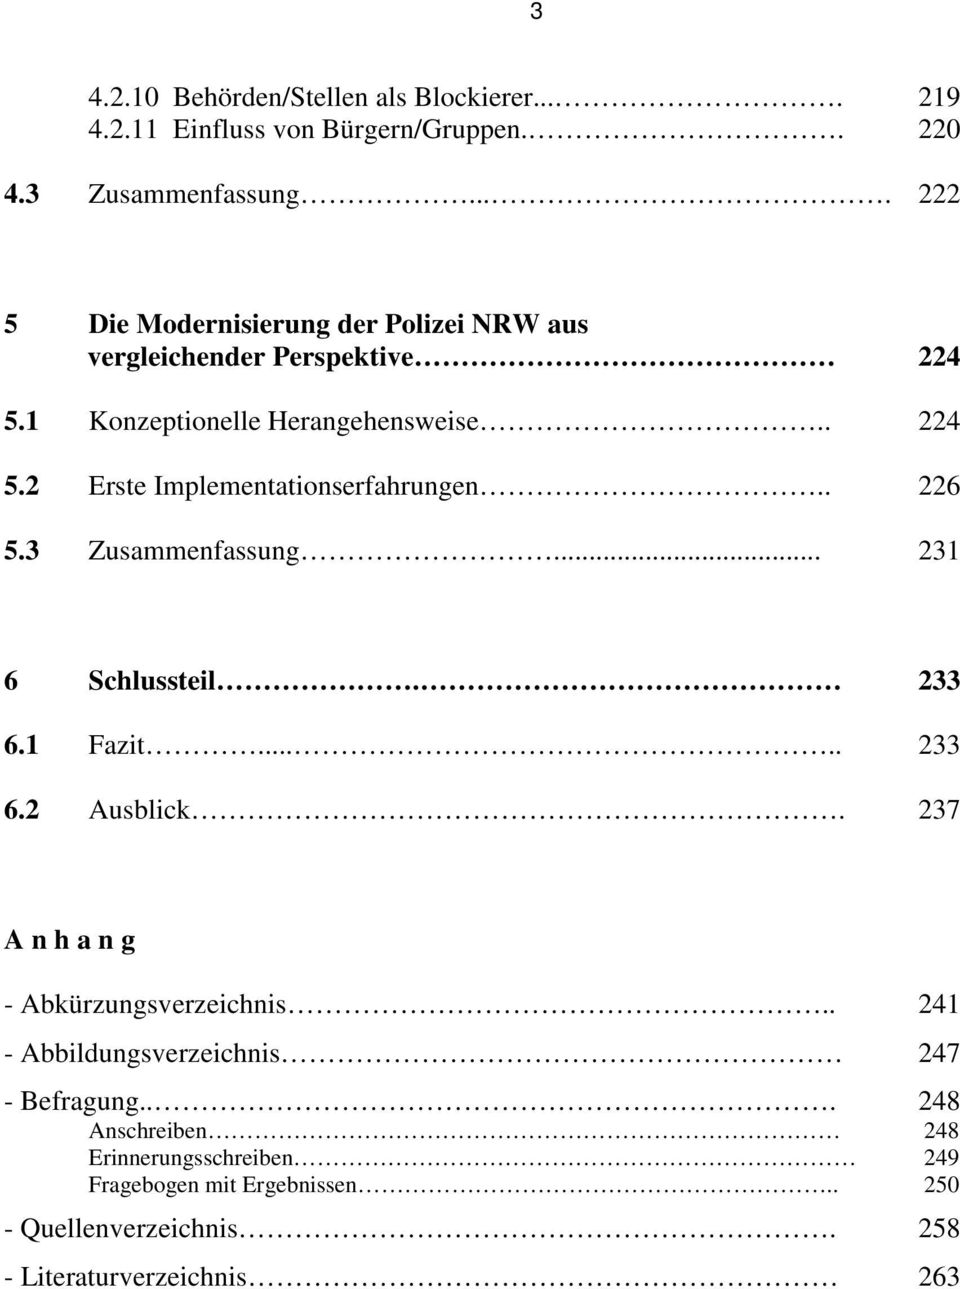 Modernisierung Der Landesverwaltung Dissertation Pdf